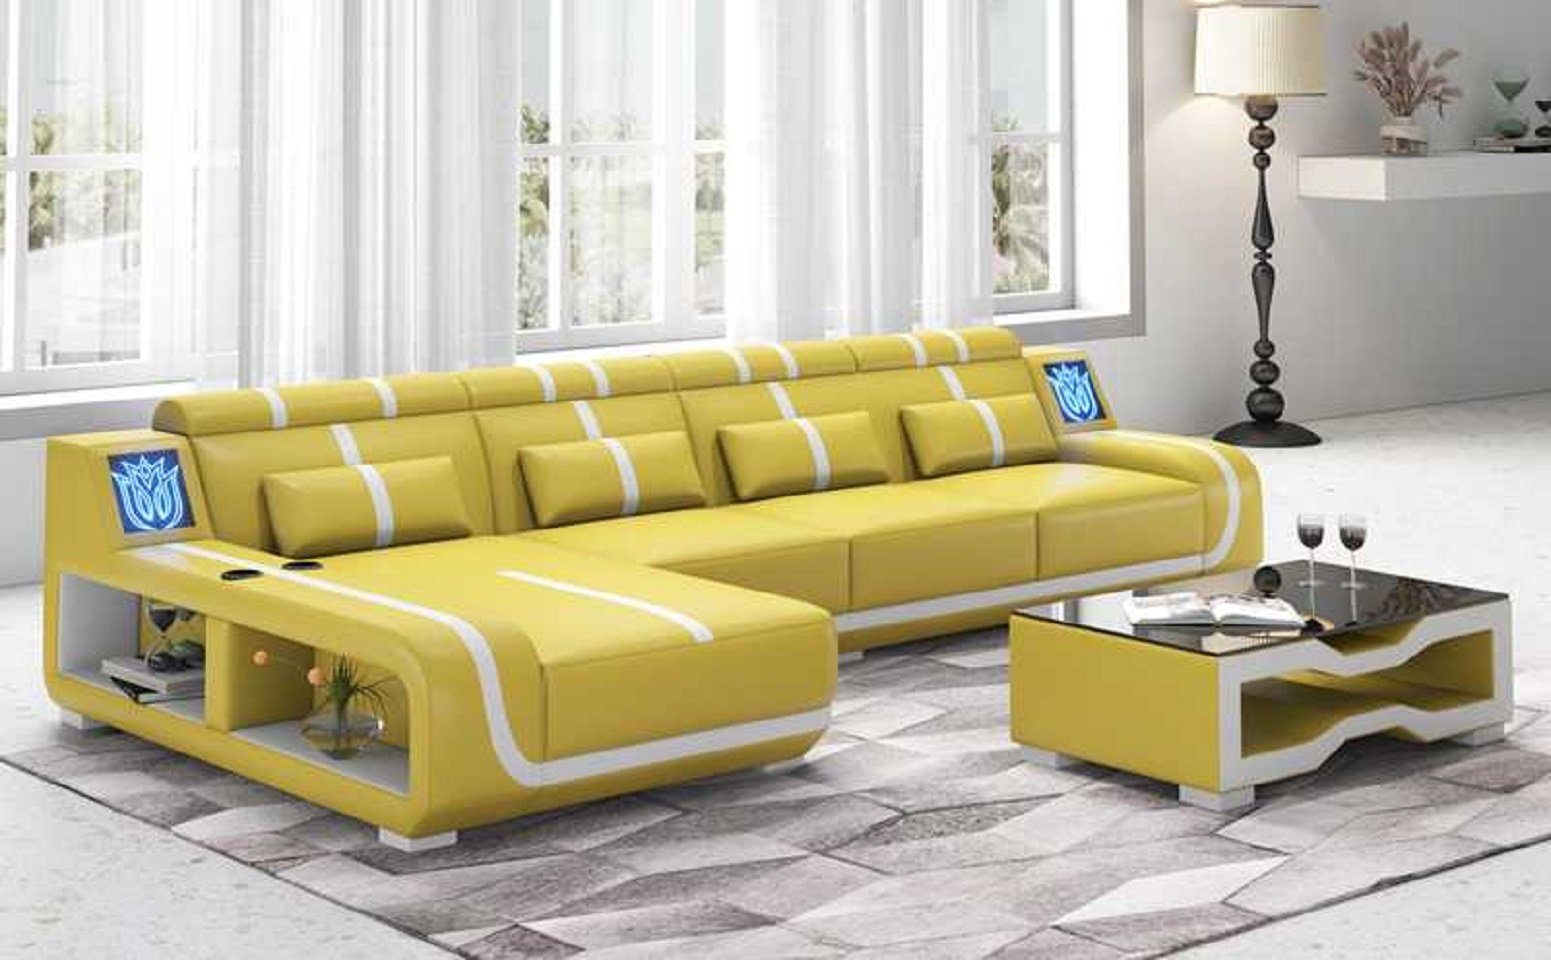 JVmoebel Ecksofa Design Ecksofa Couch L Form Liege Modern Sofa couchen, 3 Teile, Made in Europe Gelb